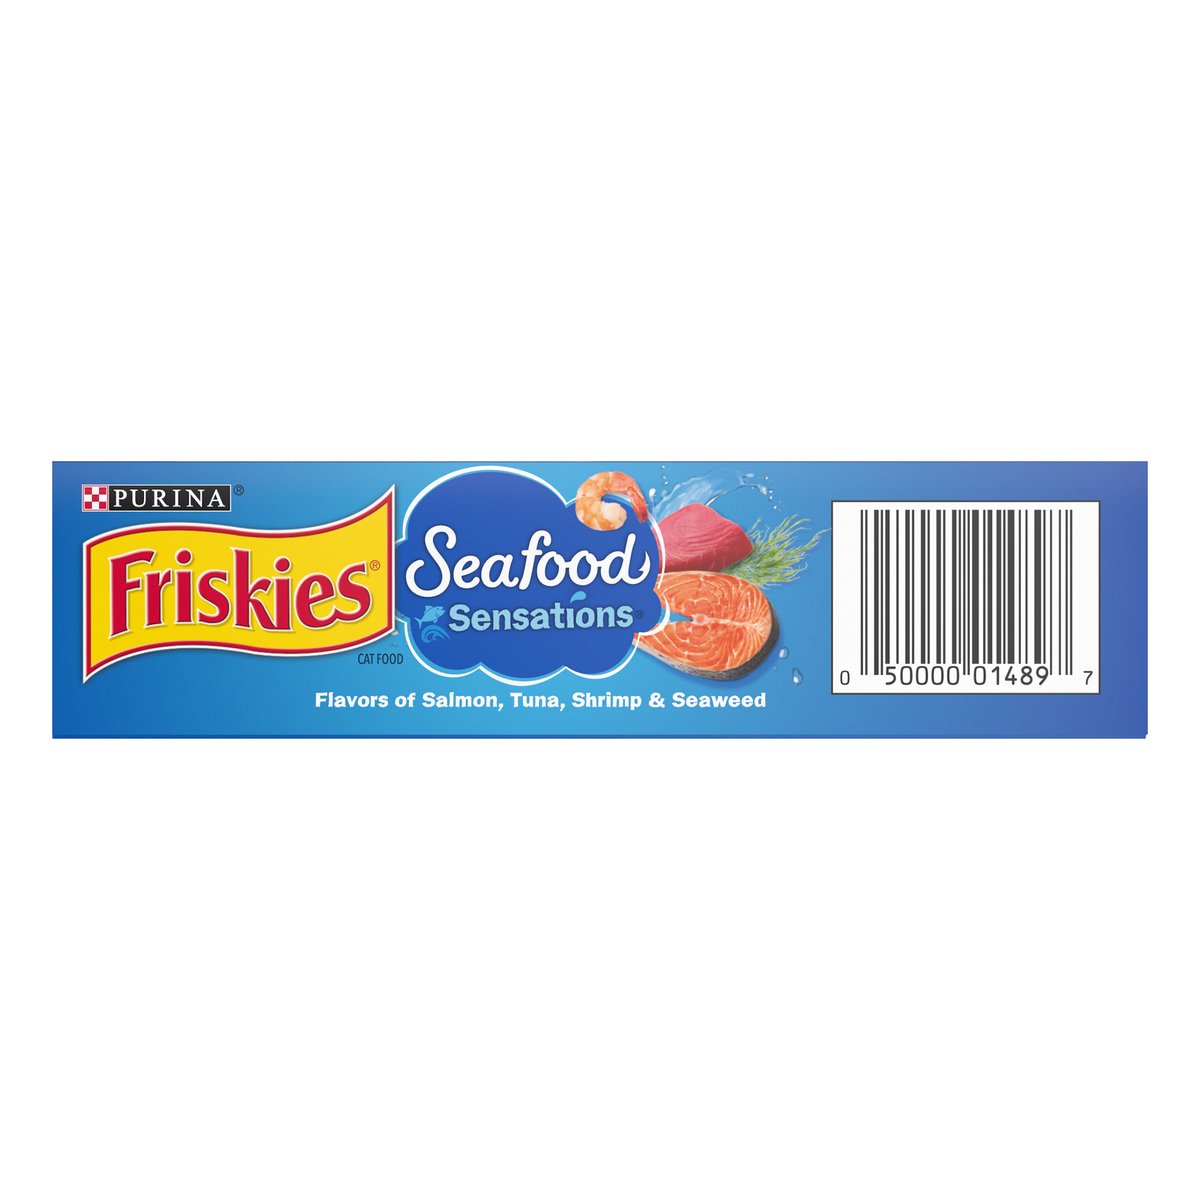 Purina Friskies Friskies Seafood Sensations Cat Dry Food 459g